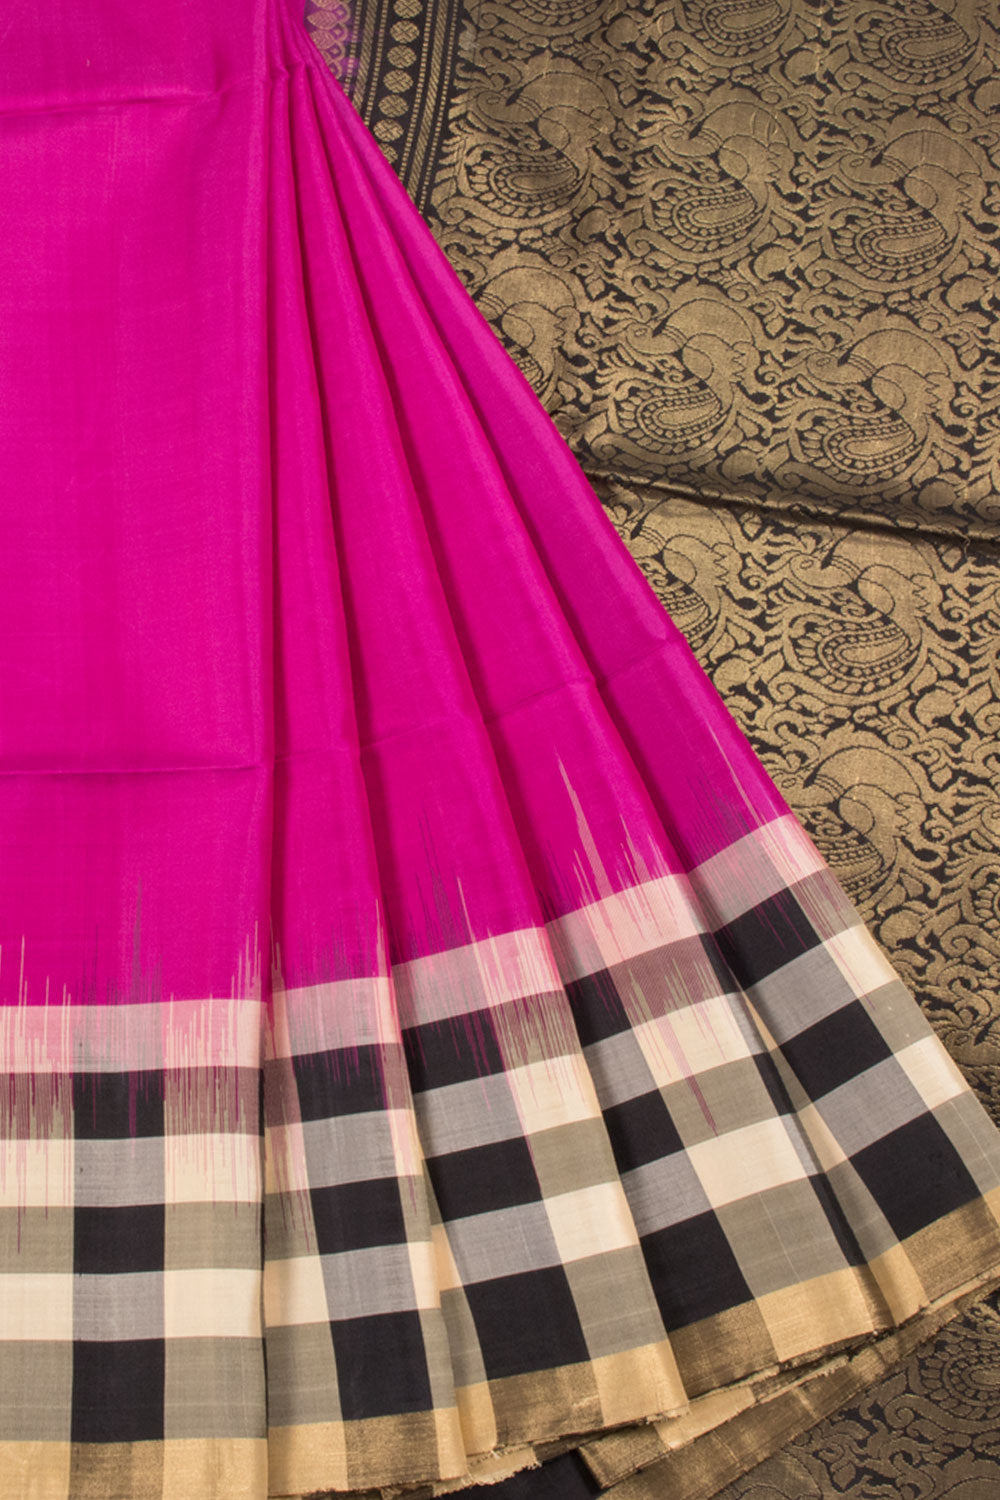 Violet Handloom Kanjivaram Soft Silk Saree with Ganga Jamuna Border and Peacock Design Pallu 